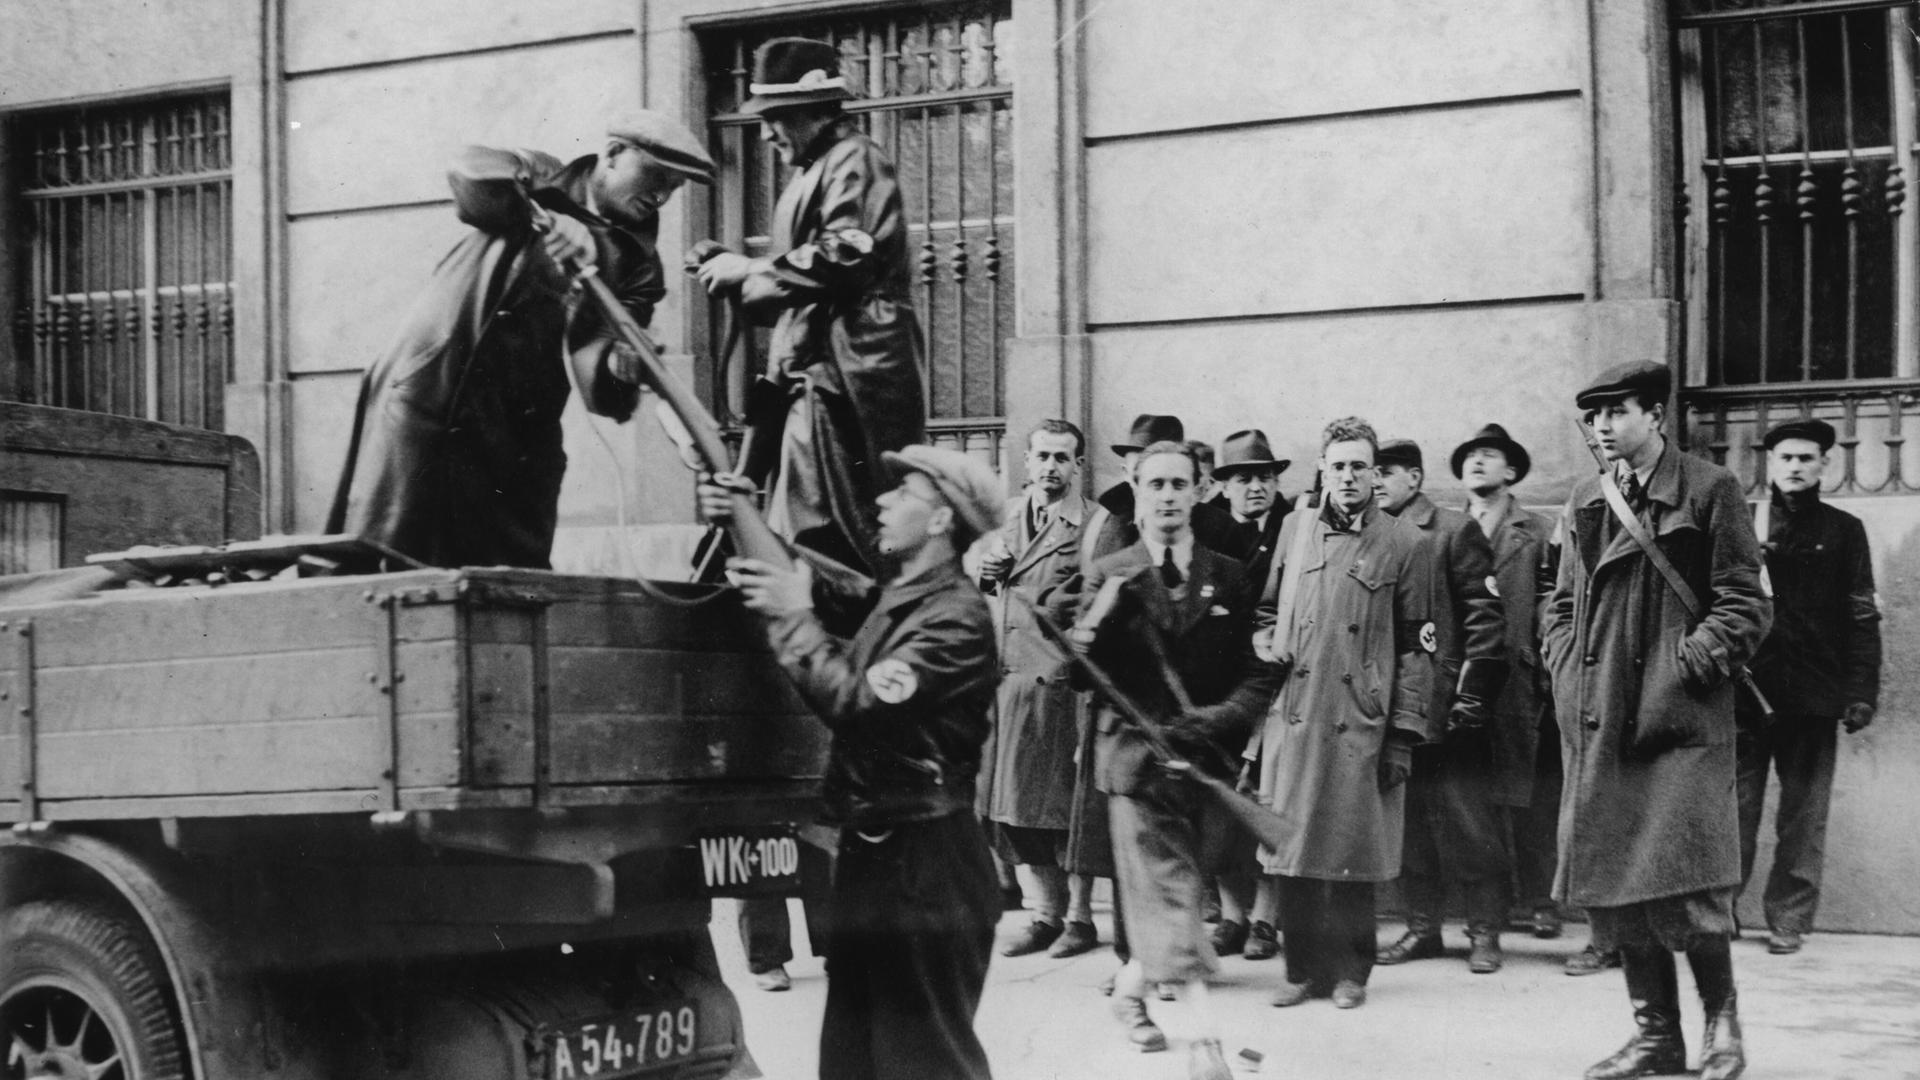 Während des NS-Putschversuchs in Wien am 25. Juli 1934 bewaffnen sich Nationalsozialisten. Ein Mann gibt an andere Waffe nvon einem Fahrzeug aus aus.